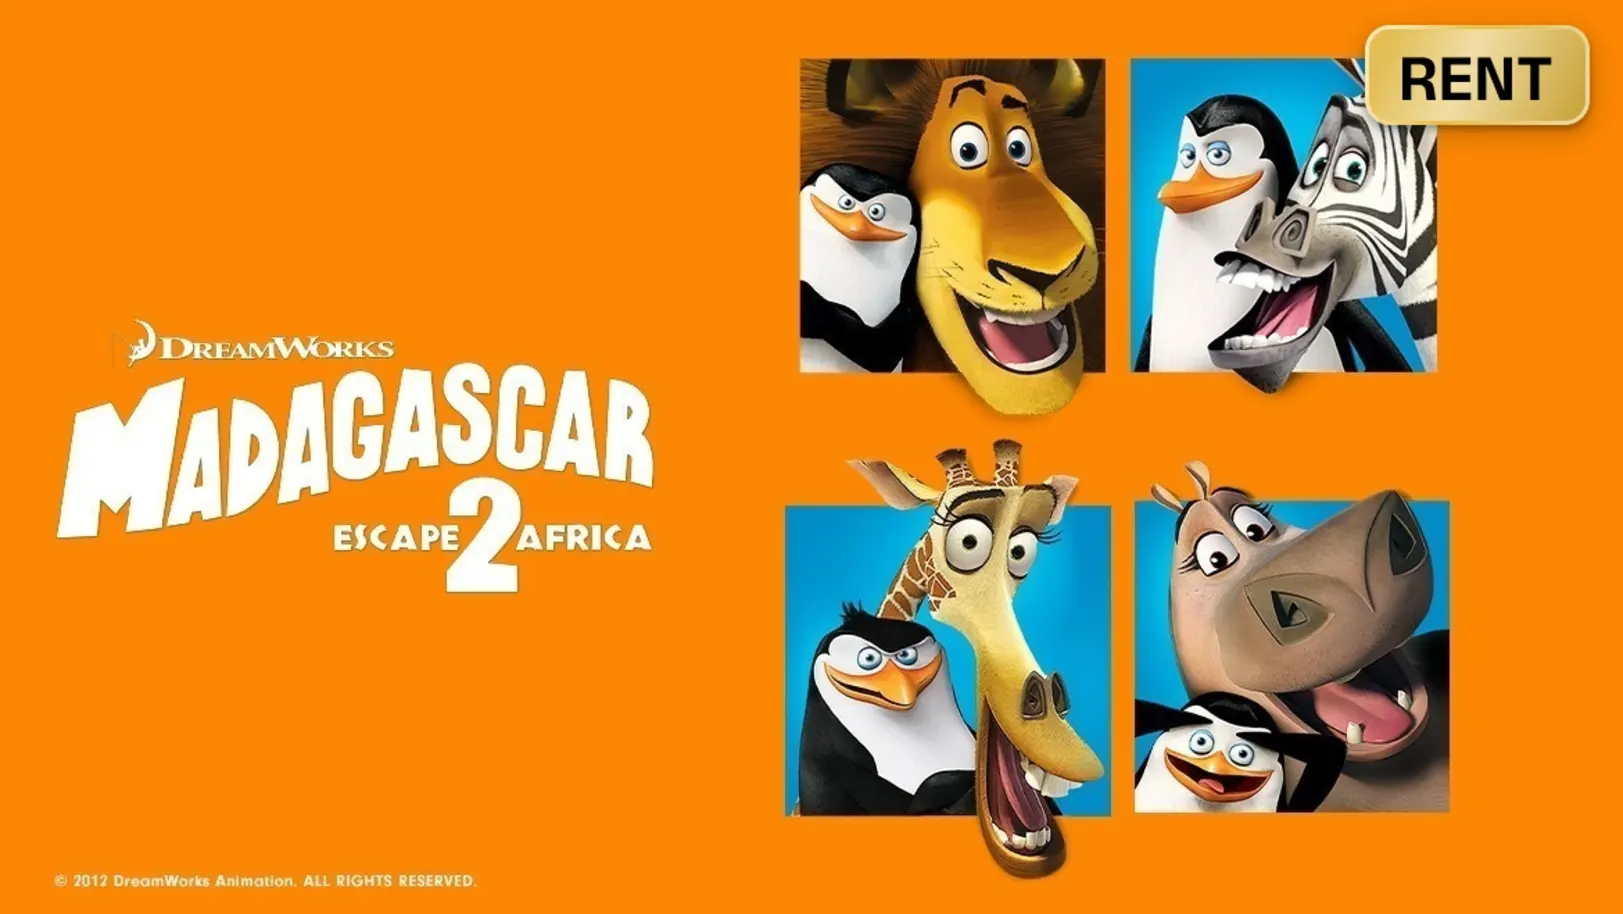 Madagascar: Escape 2 Africa Movie